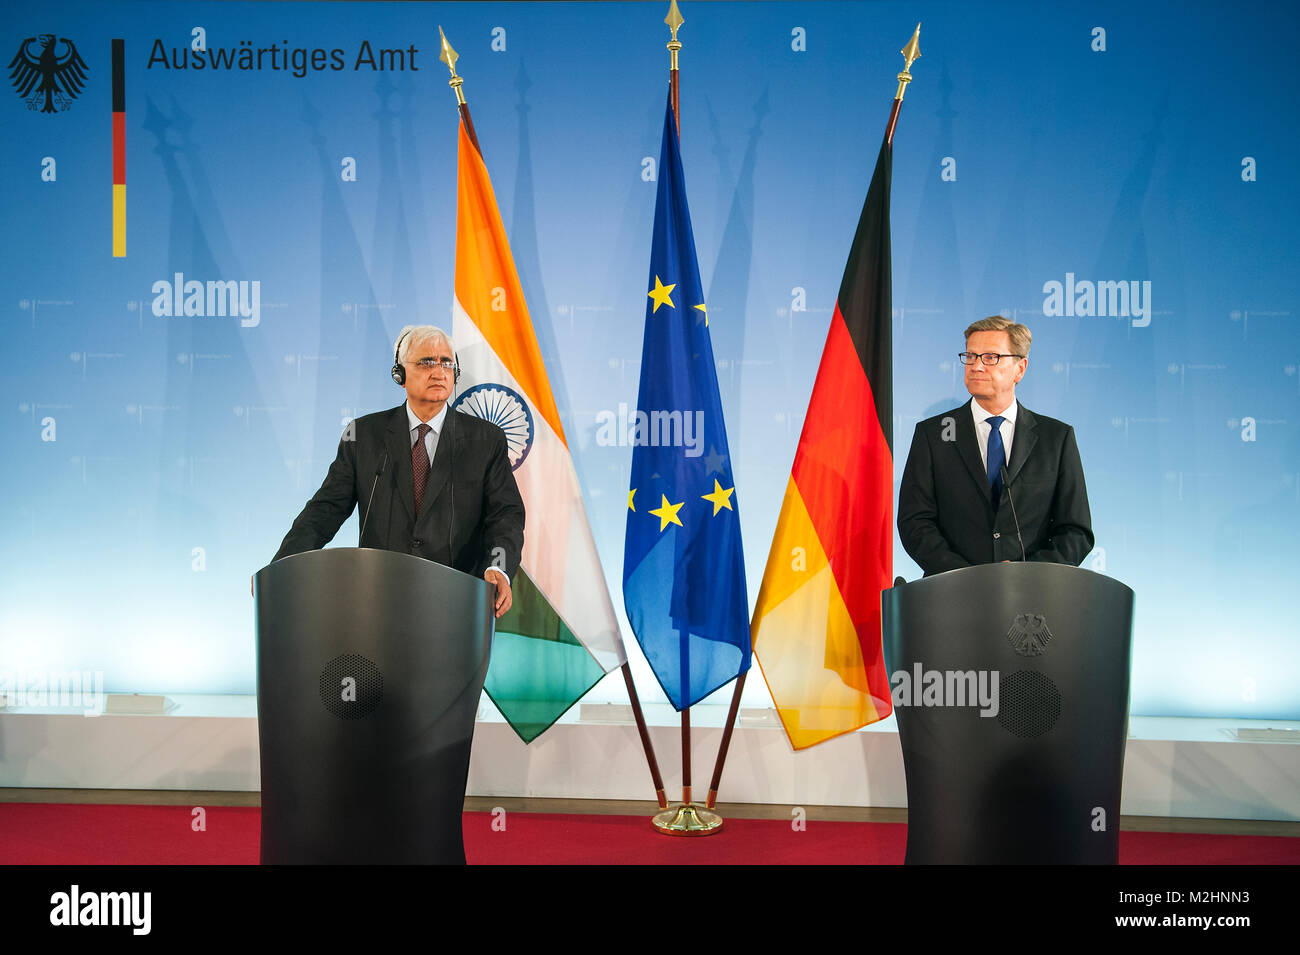 Rencontre bilatérale entre le ministre des Affaires étrangères allemand Guido Westerwelle et son homologue indien, Salman Khurshid. Banque D'Images